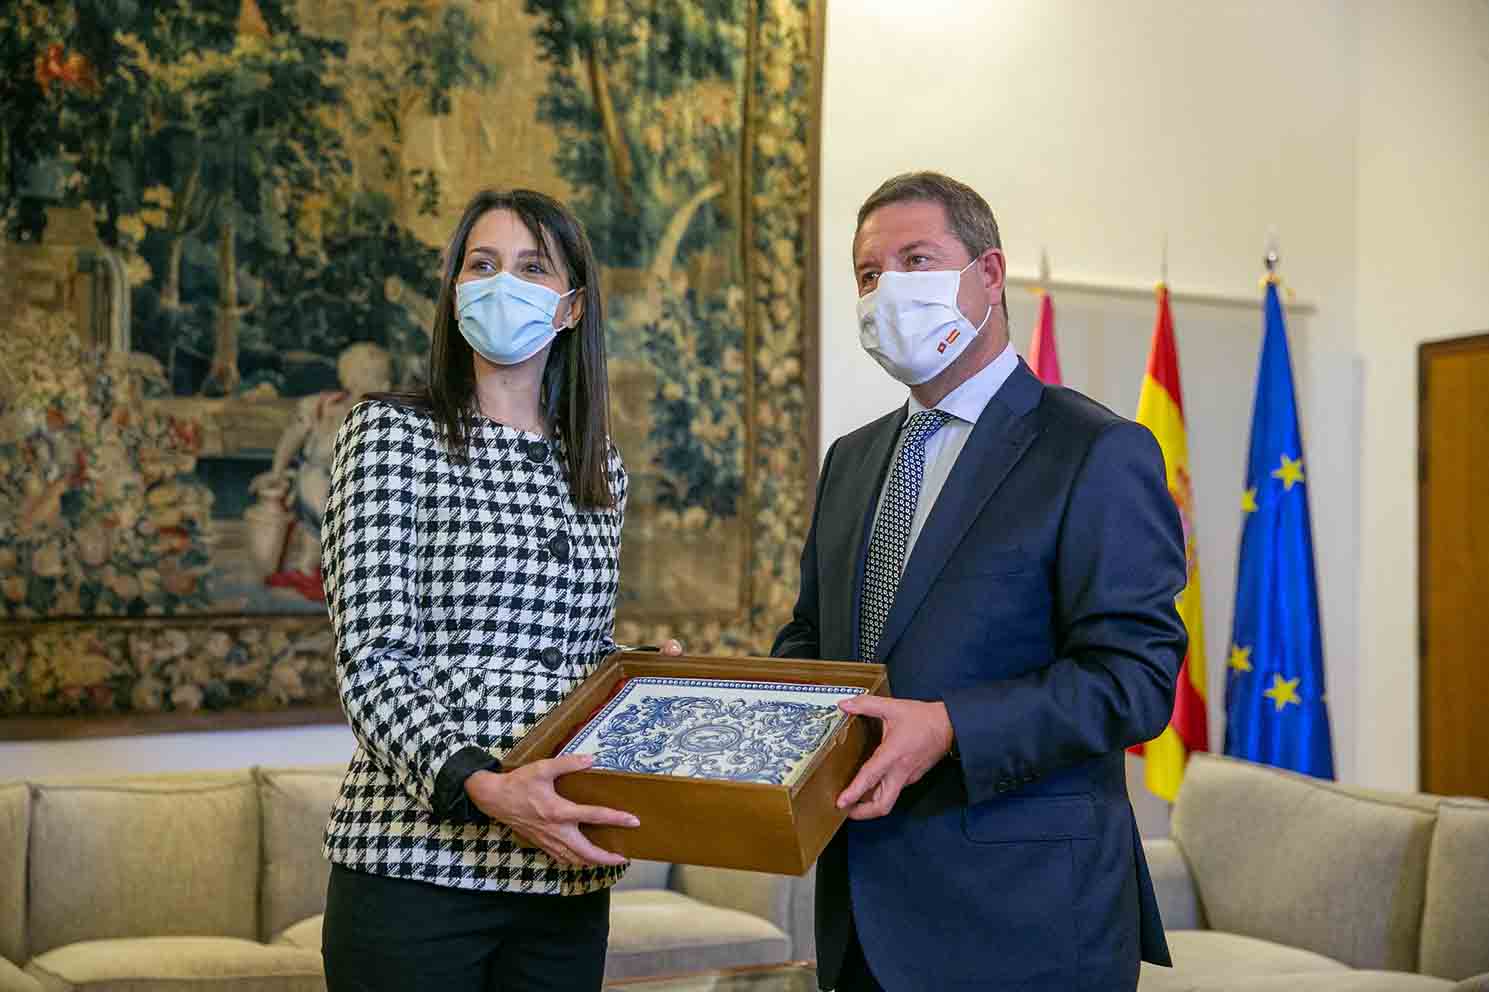 Page ha obsequiado a Arrimadas con cerámica de Talavera en su visita al Palacio de Fuensalida.